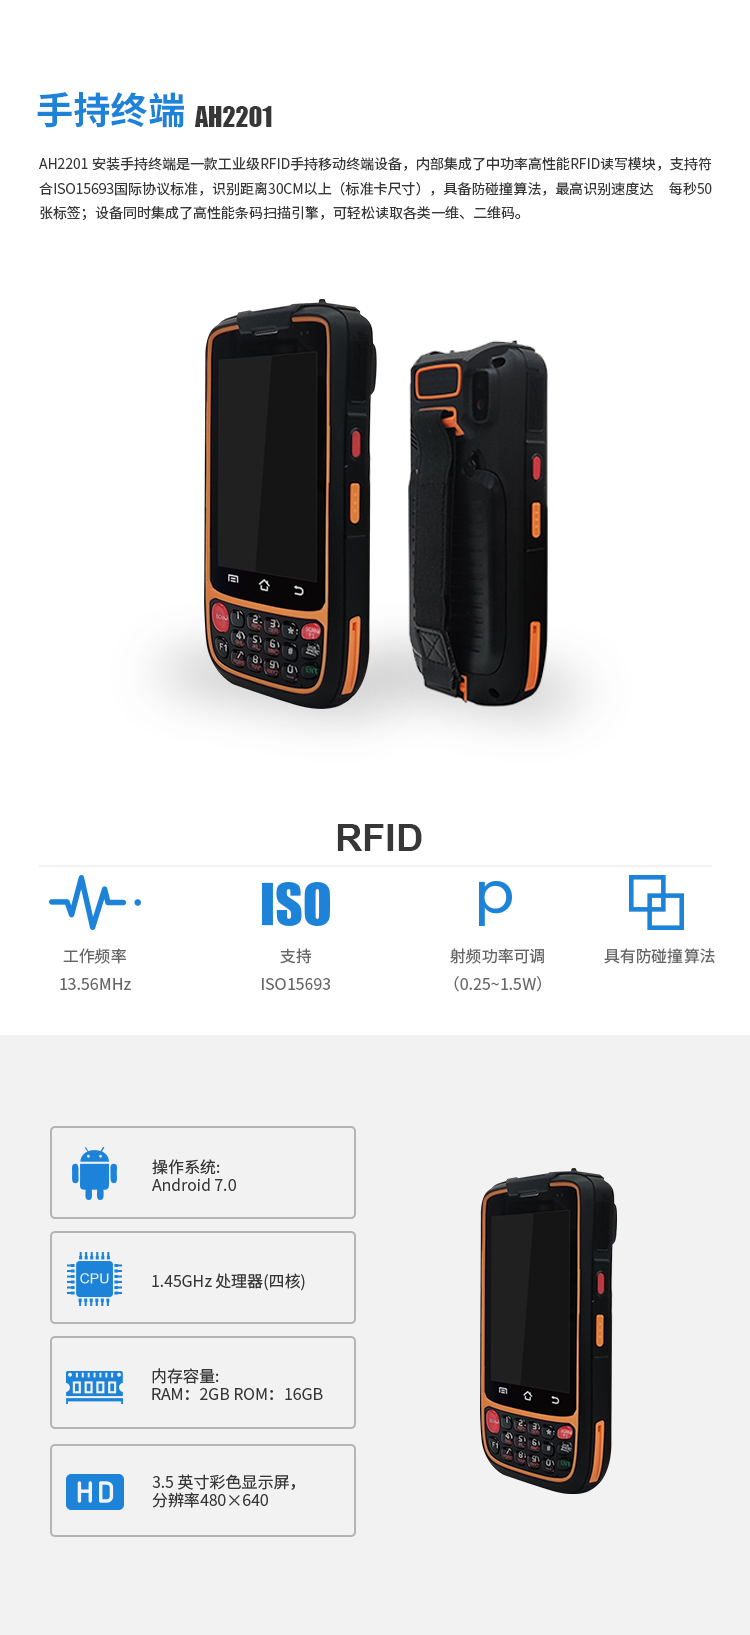 工业手持终端,精准识别,工业RFID,工业PDA